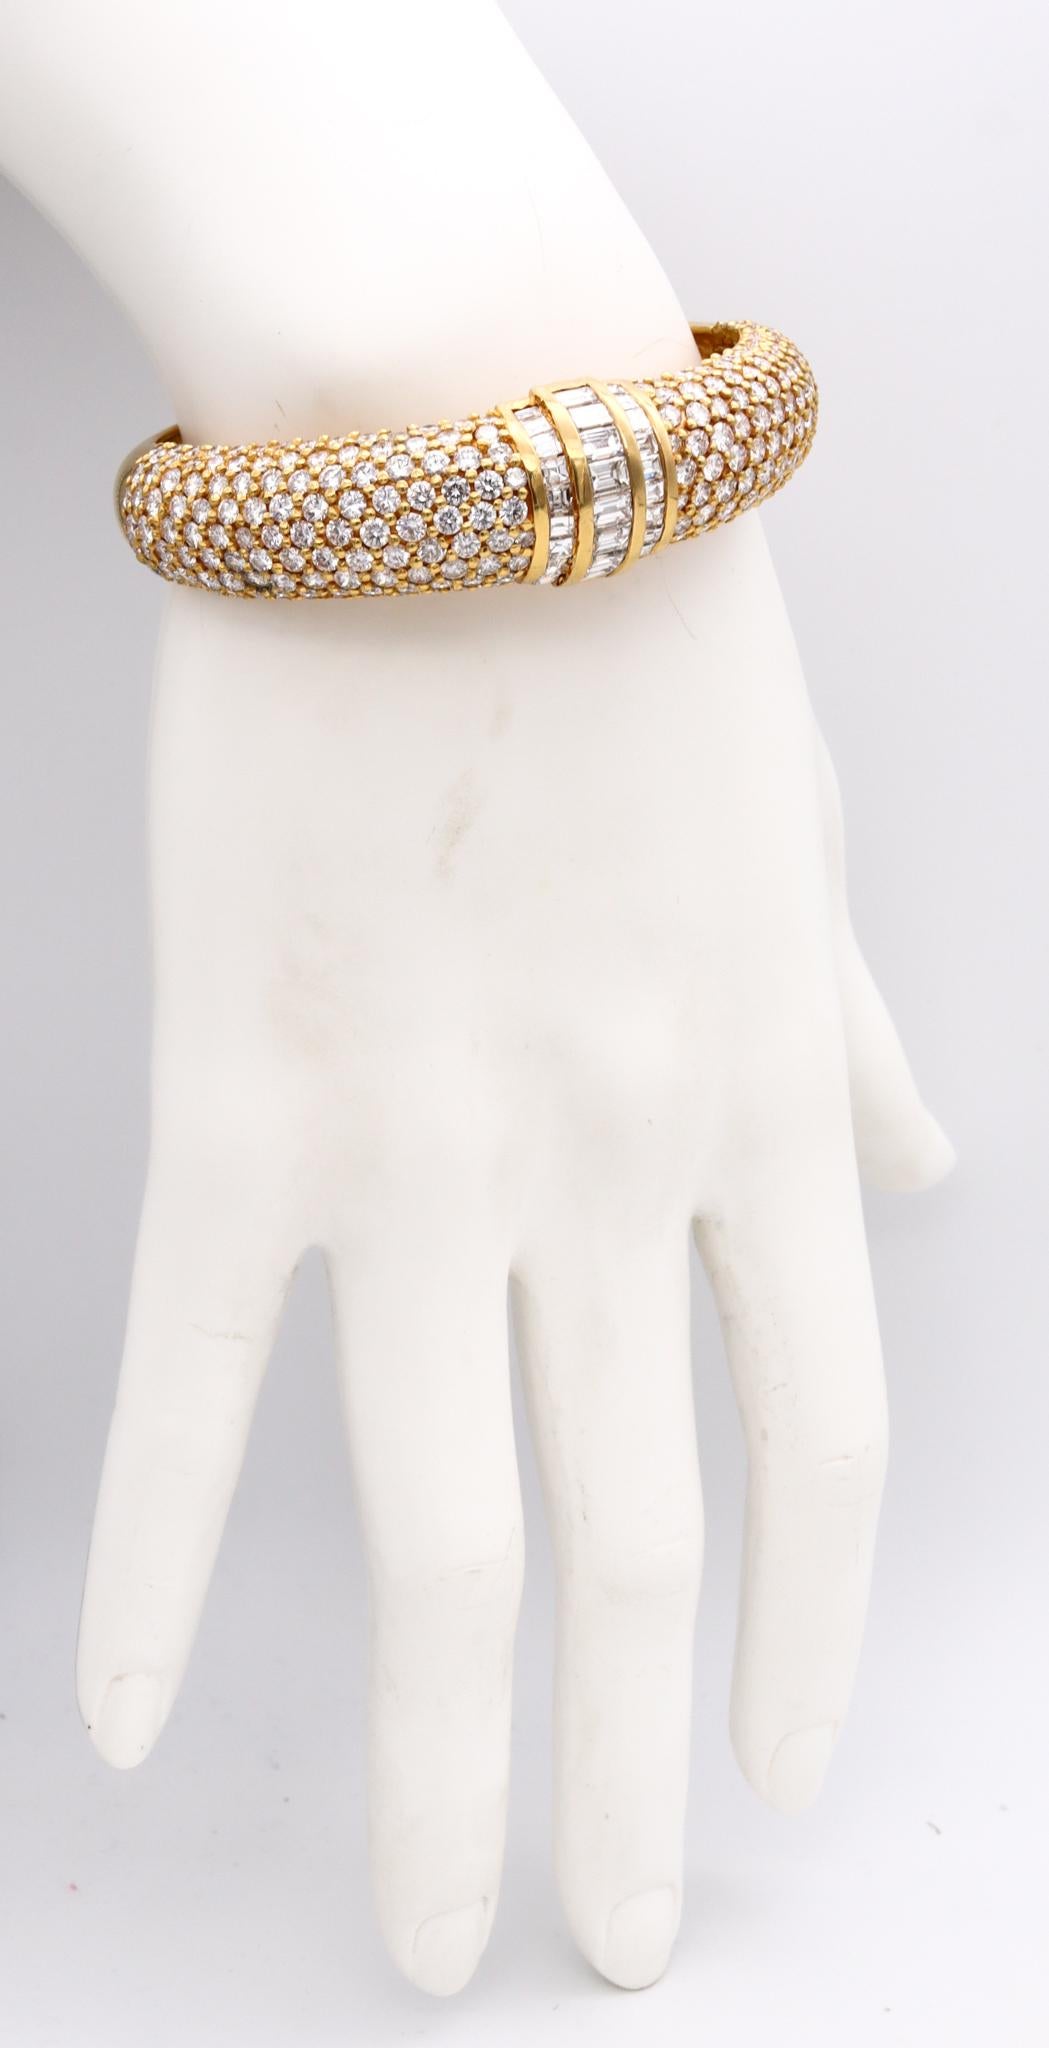 Exceptionnel bracelet bangle en diamants

Magnifique bijou moderne de créateur, fabriqué avec soin en Italie, avec des motifs symétriques classiques en or jaune massif de 18 carats. Adapté, avec une charnière invisible sur un côté comme système de